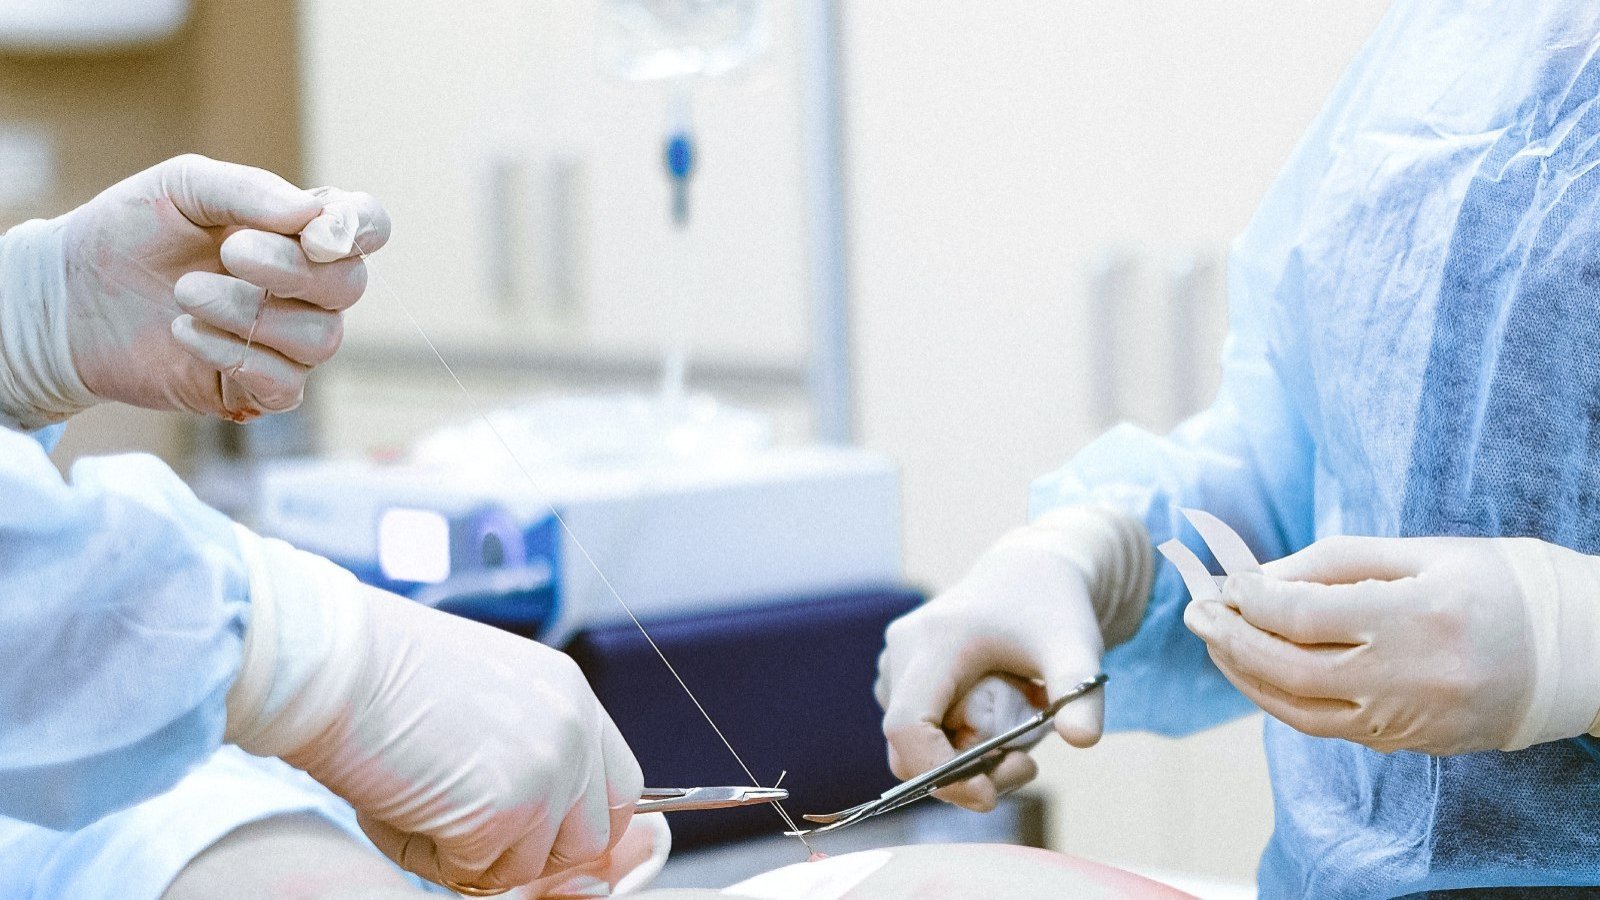 Cirujanos realizando sutura a un paciente